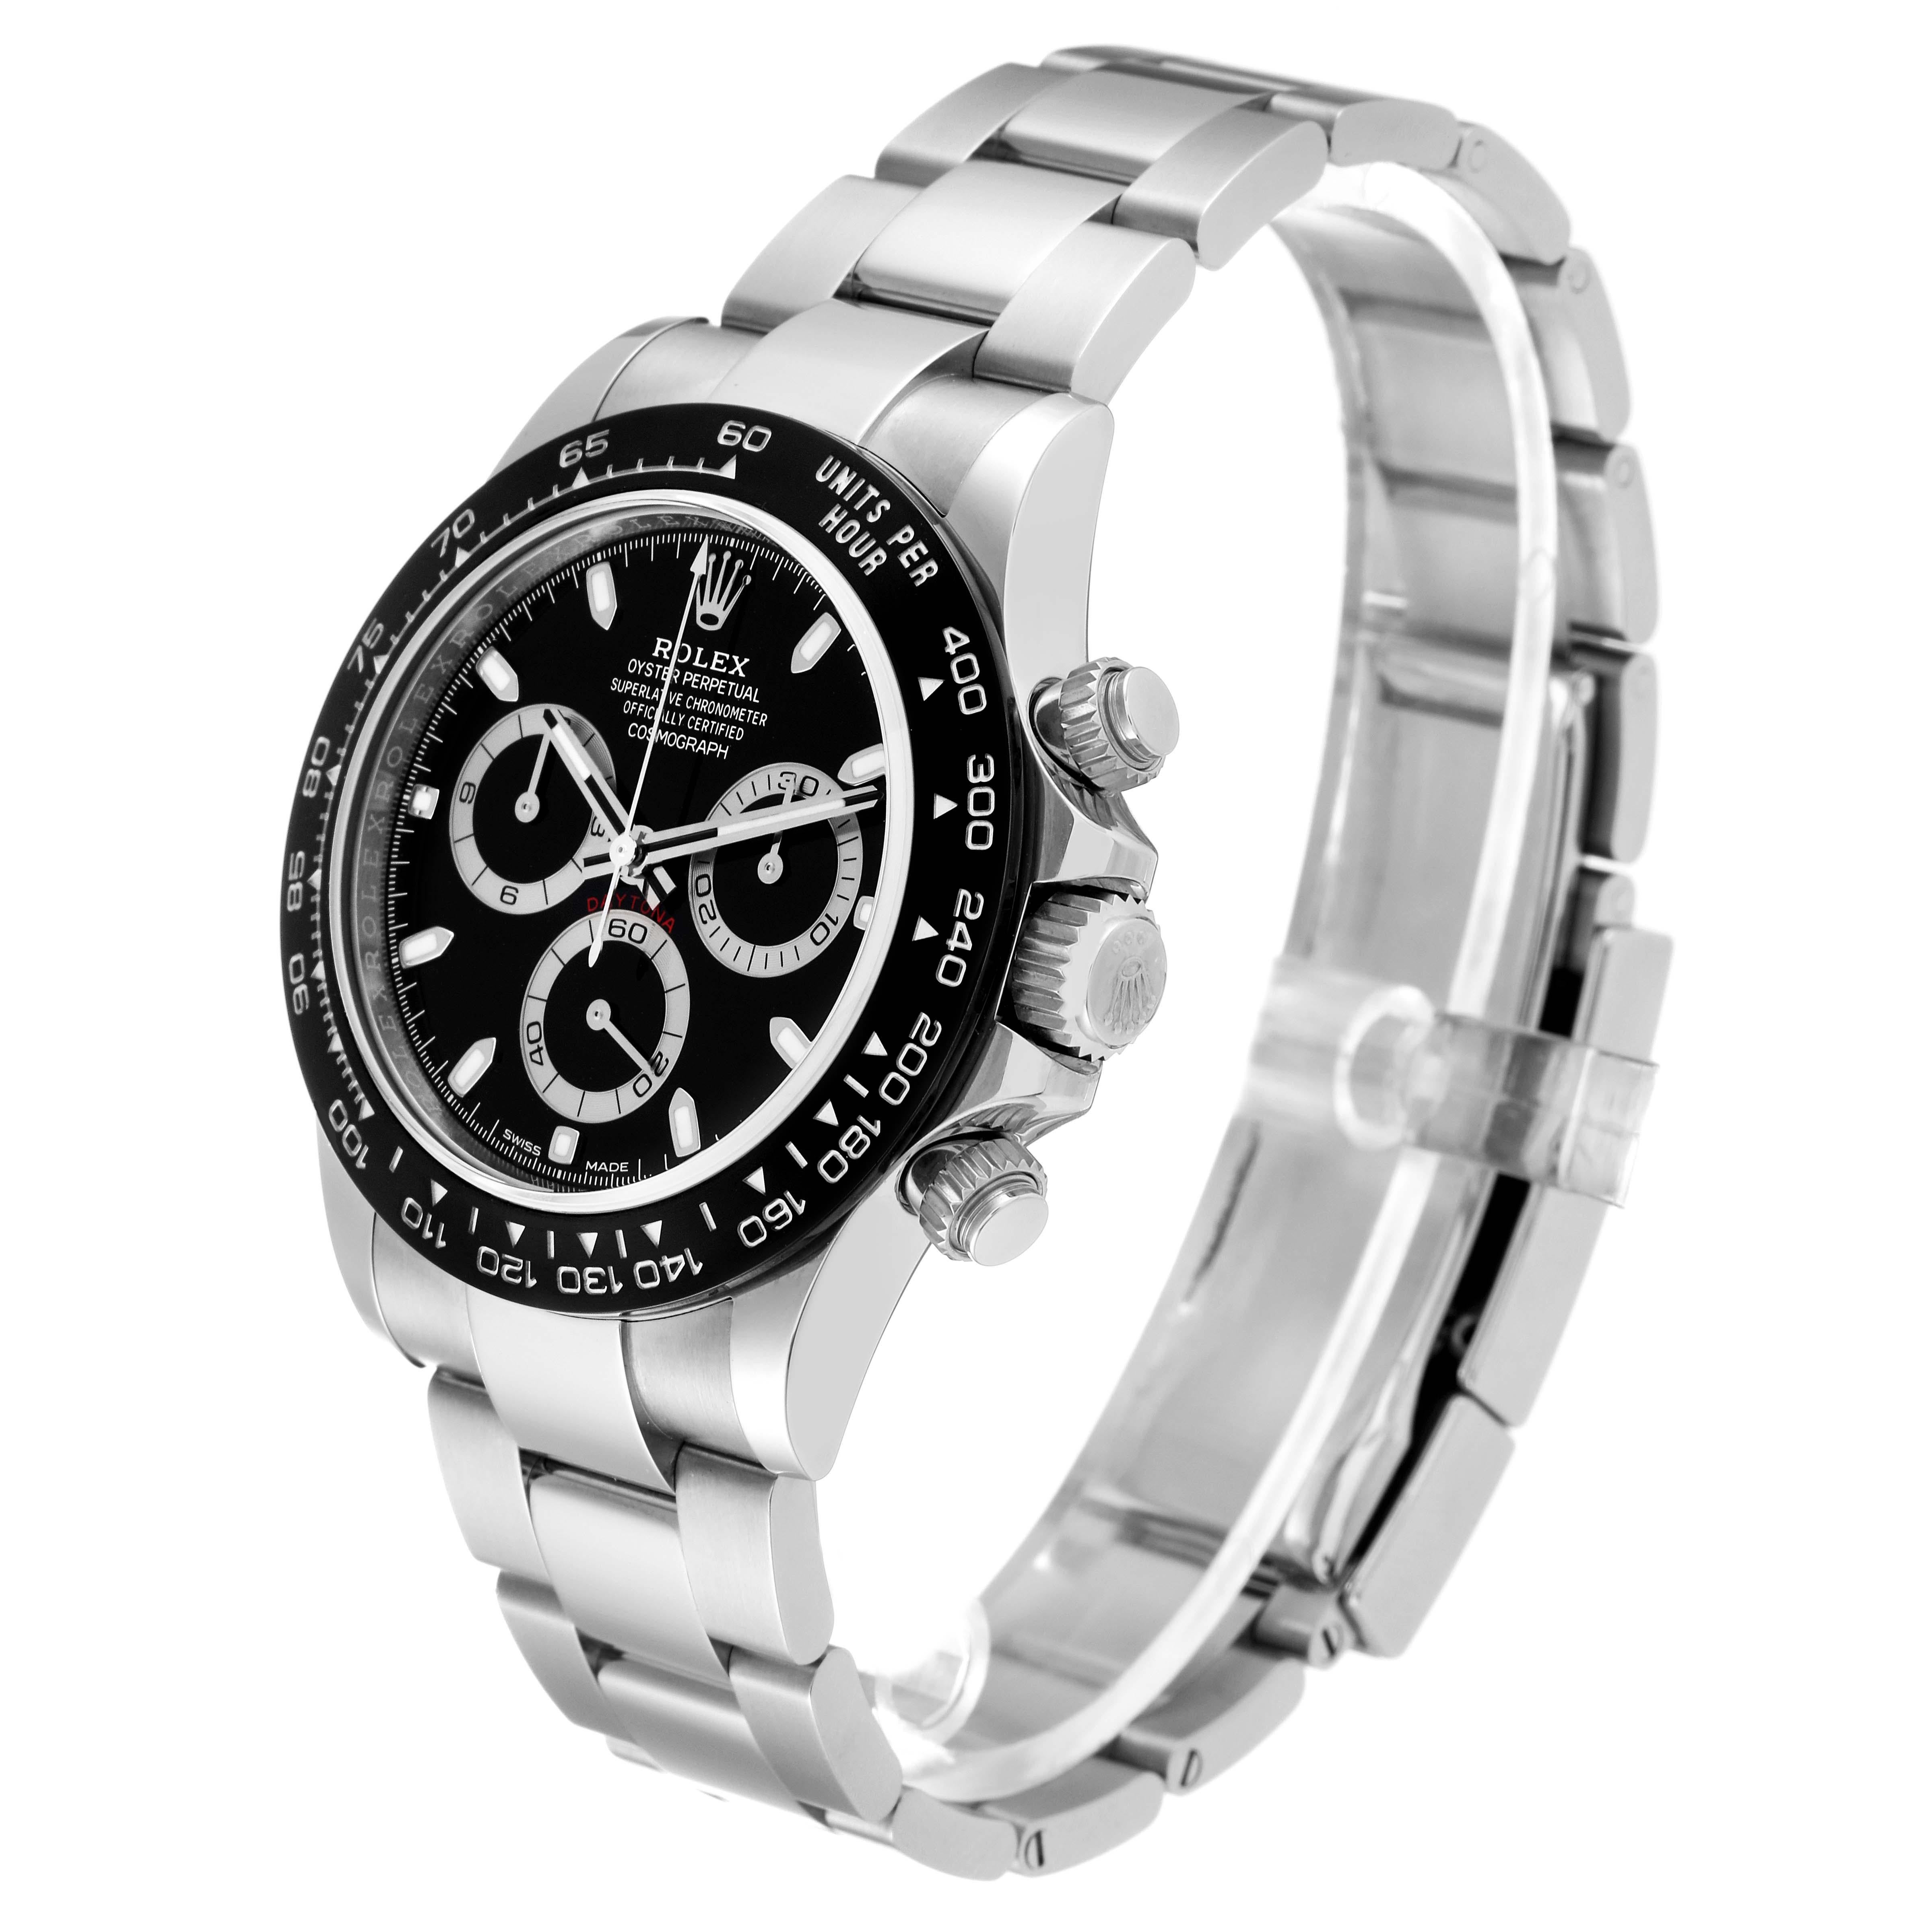 Men's Rolex Cosmograph Daytona Ceramic Bezel Black Dial Steel Mens Watch 116500 Unworn